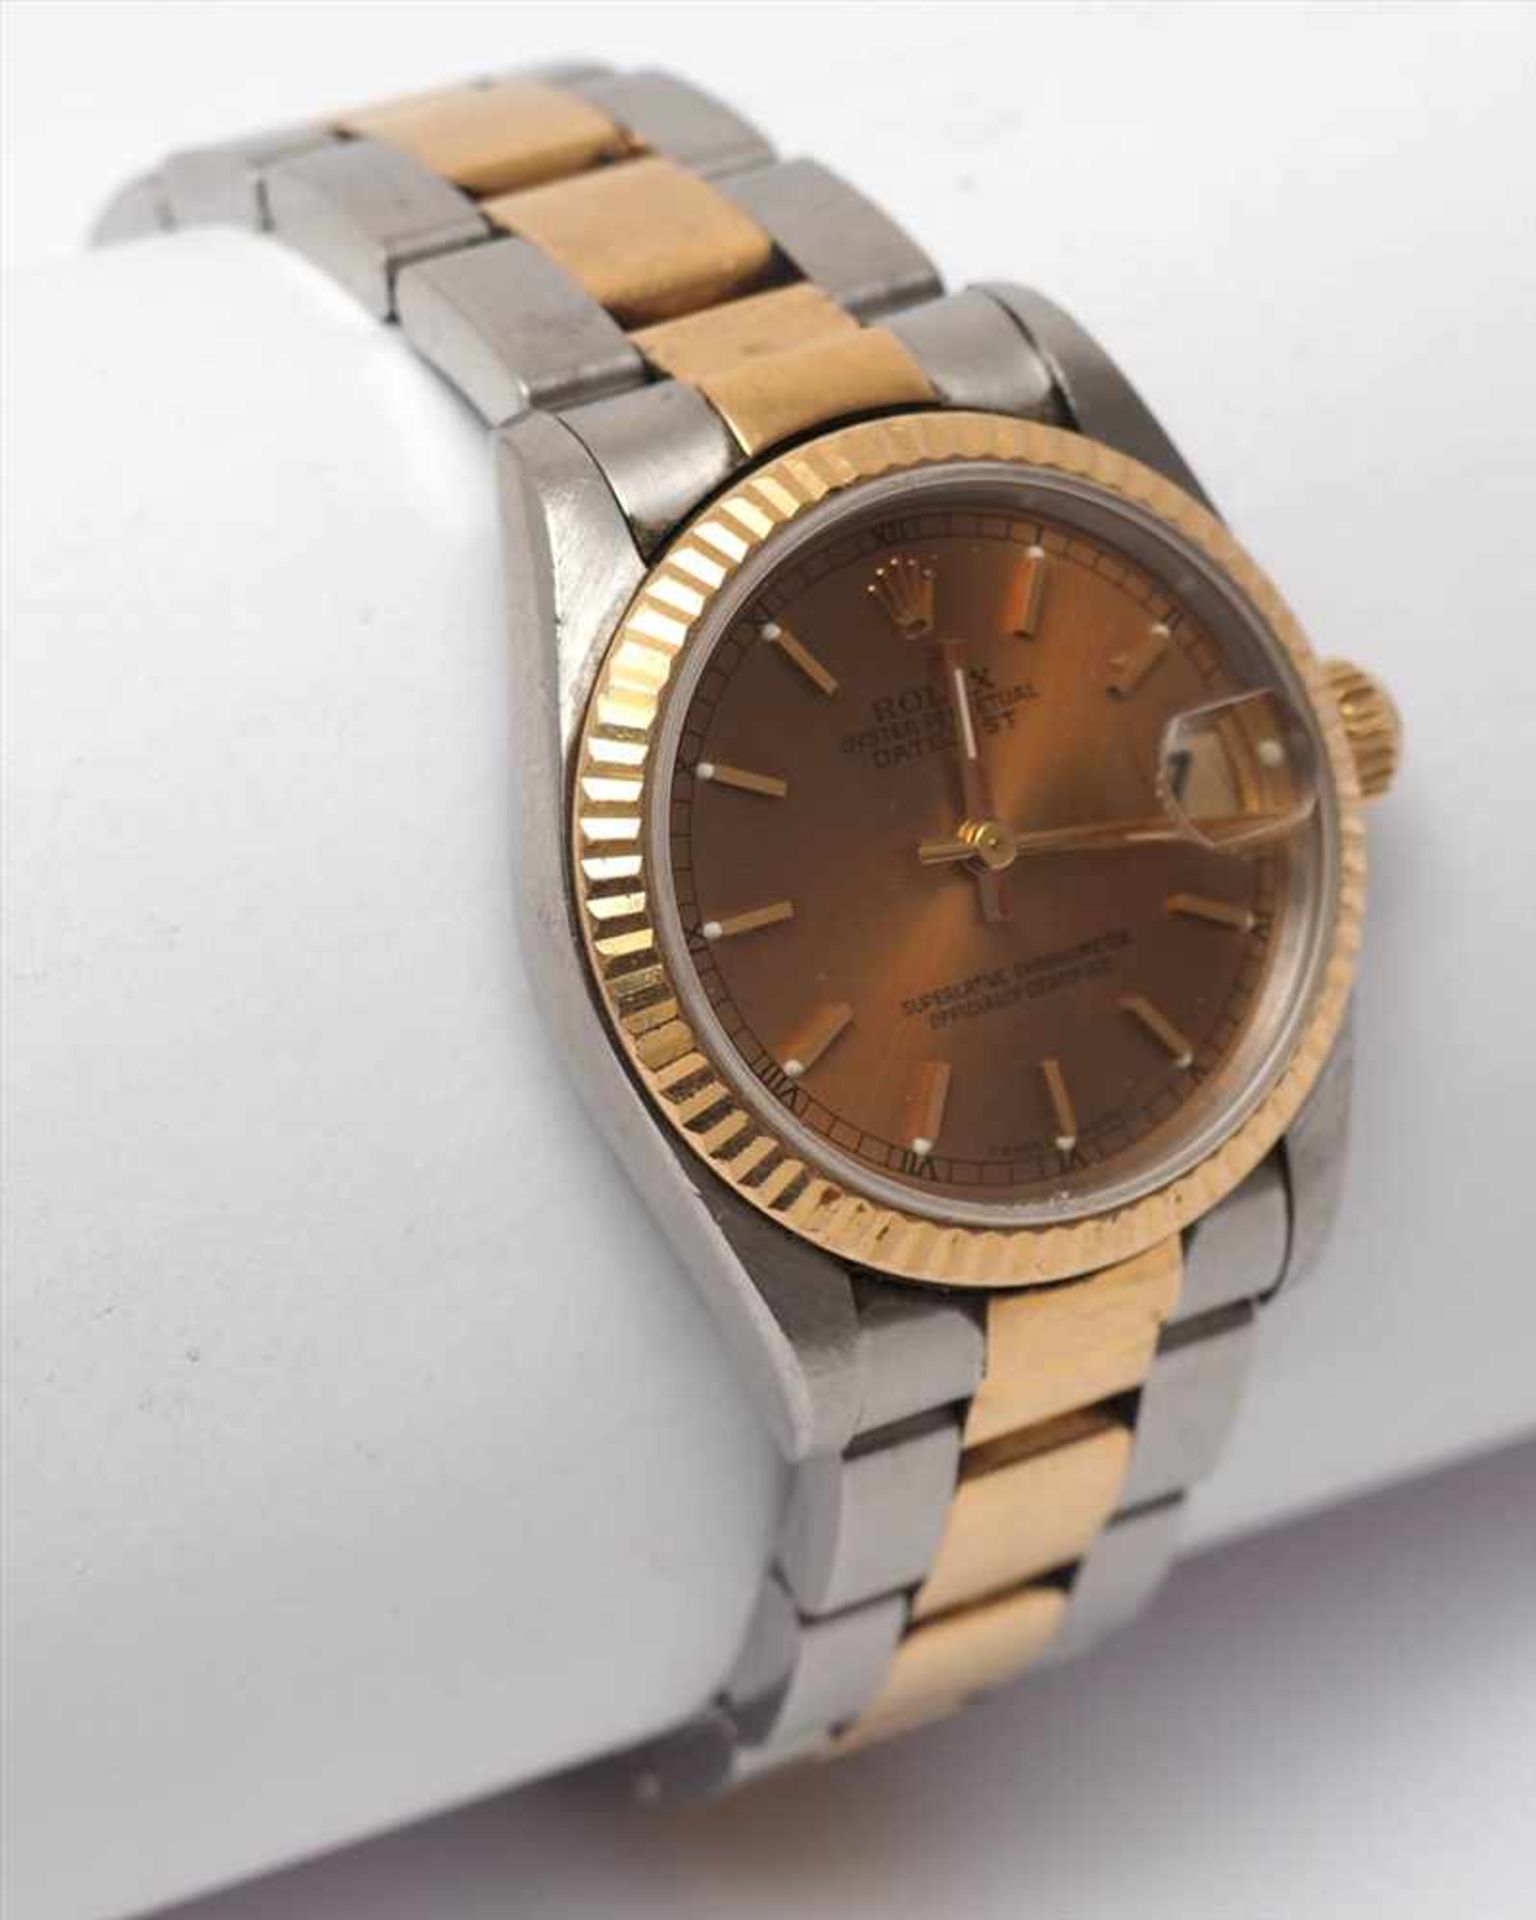 Unisex-Armbanduhr, Rolex Oyster Perpetual DatejustGoldfarbenes Zifferblatt, Datum auf der Drei,